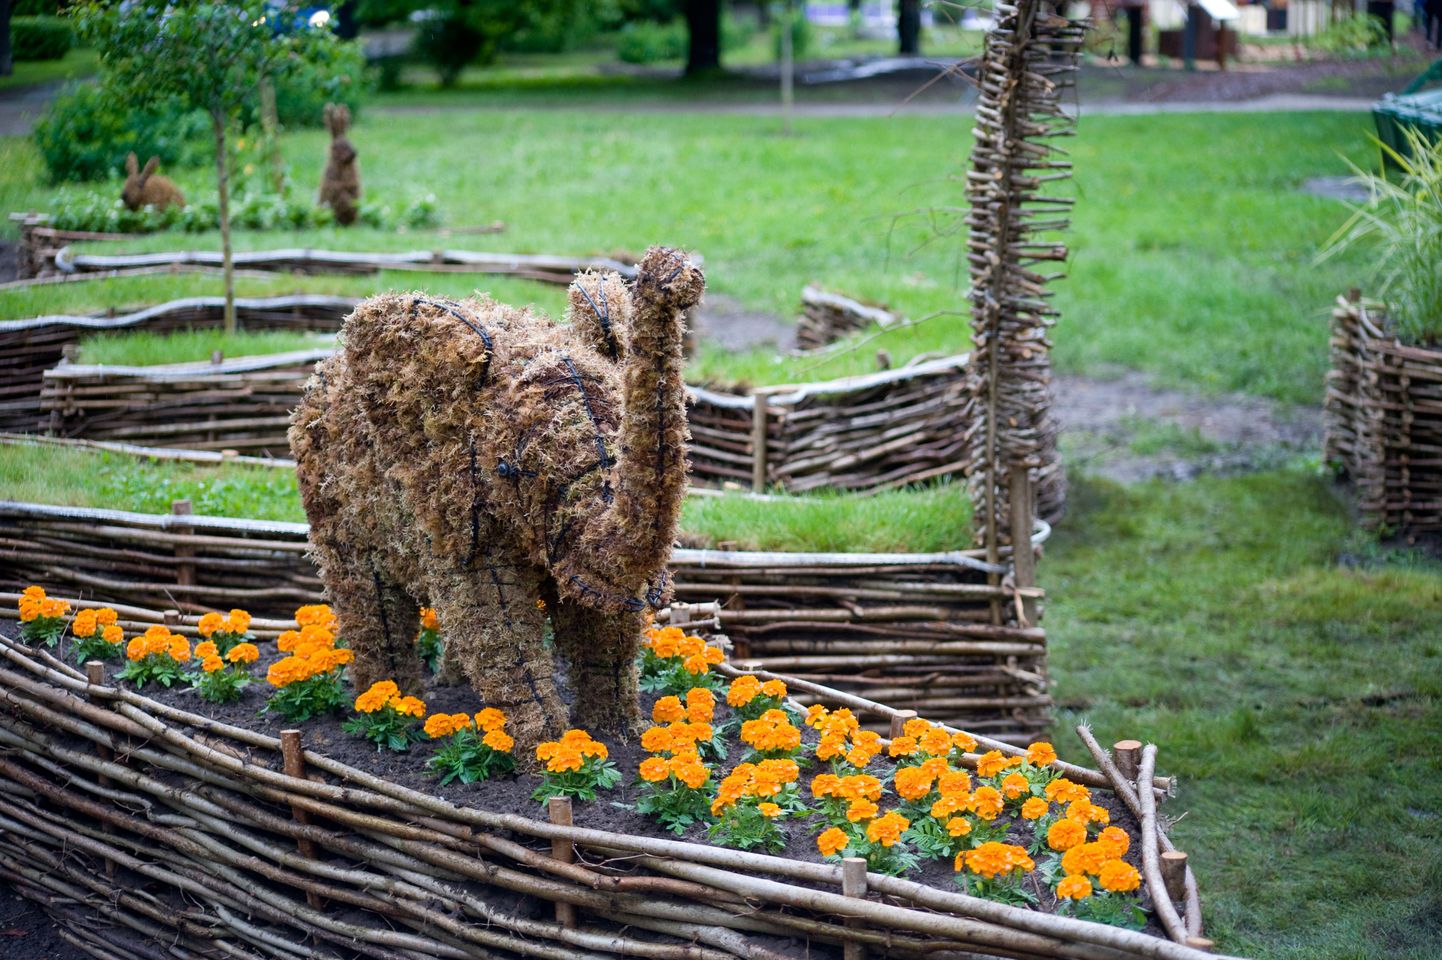 Сады первого международного Фестиваля цветов в Таллинне в 2009 году.